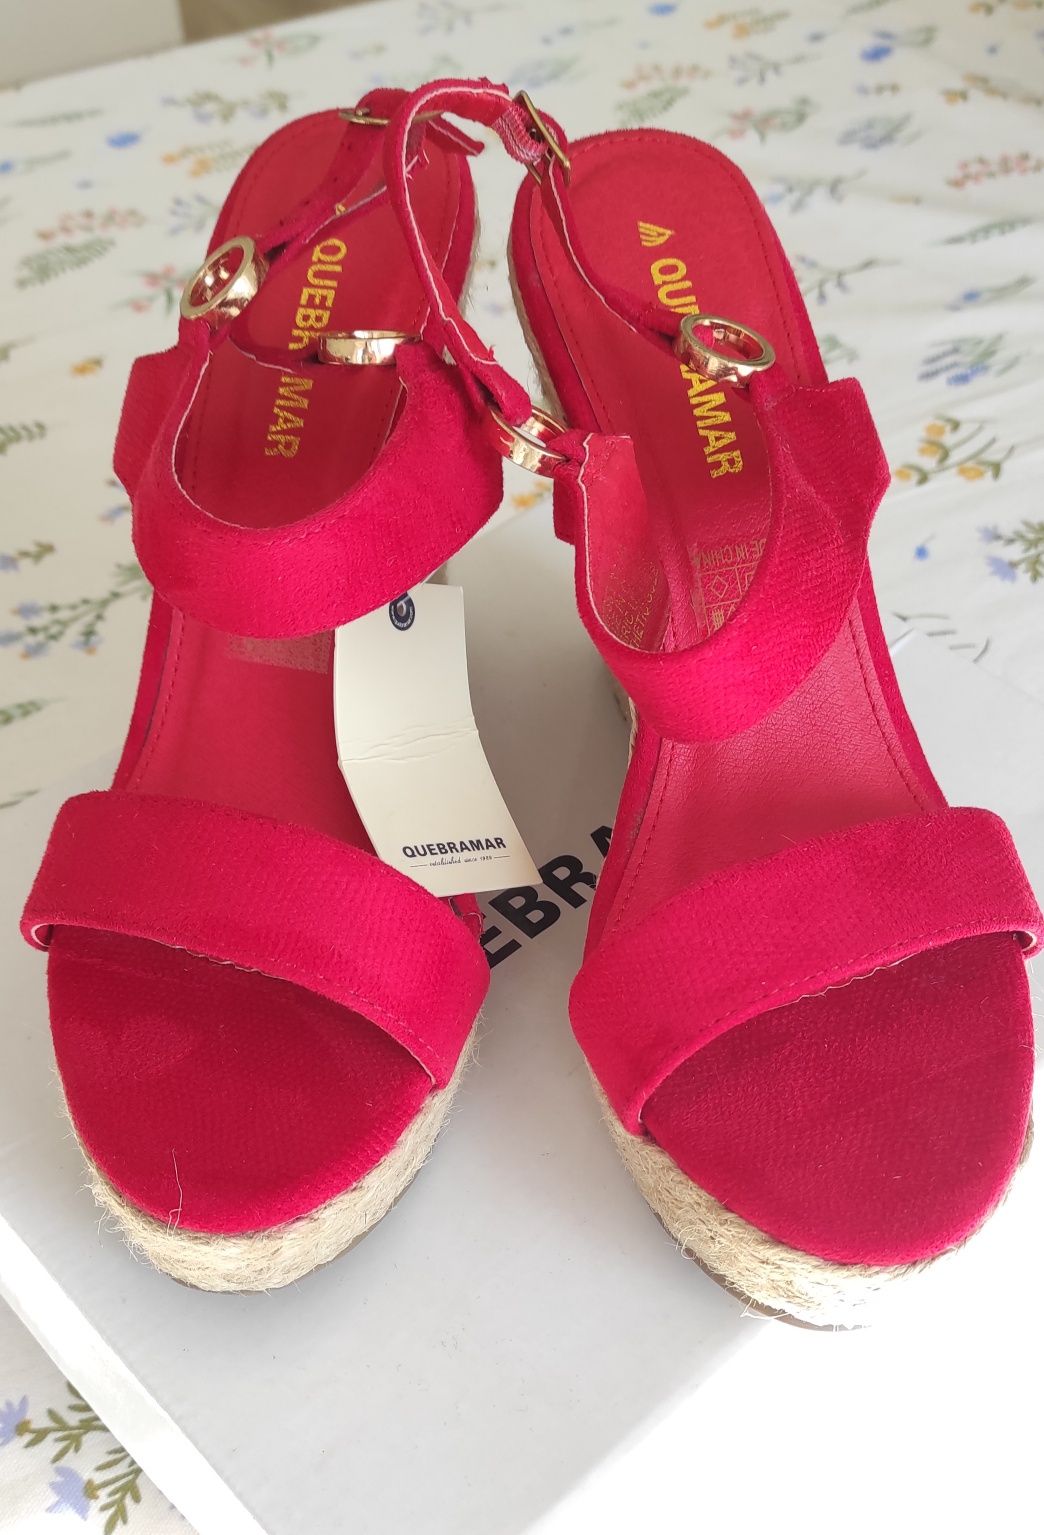 Sandálias vermelhas novas Quebramar tam. 40